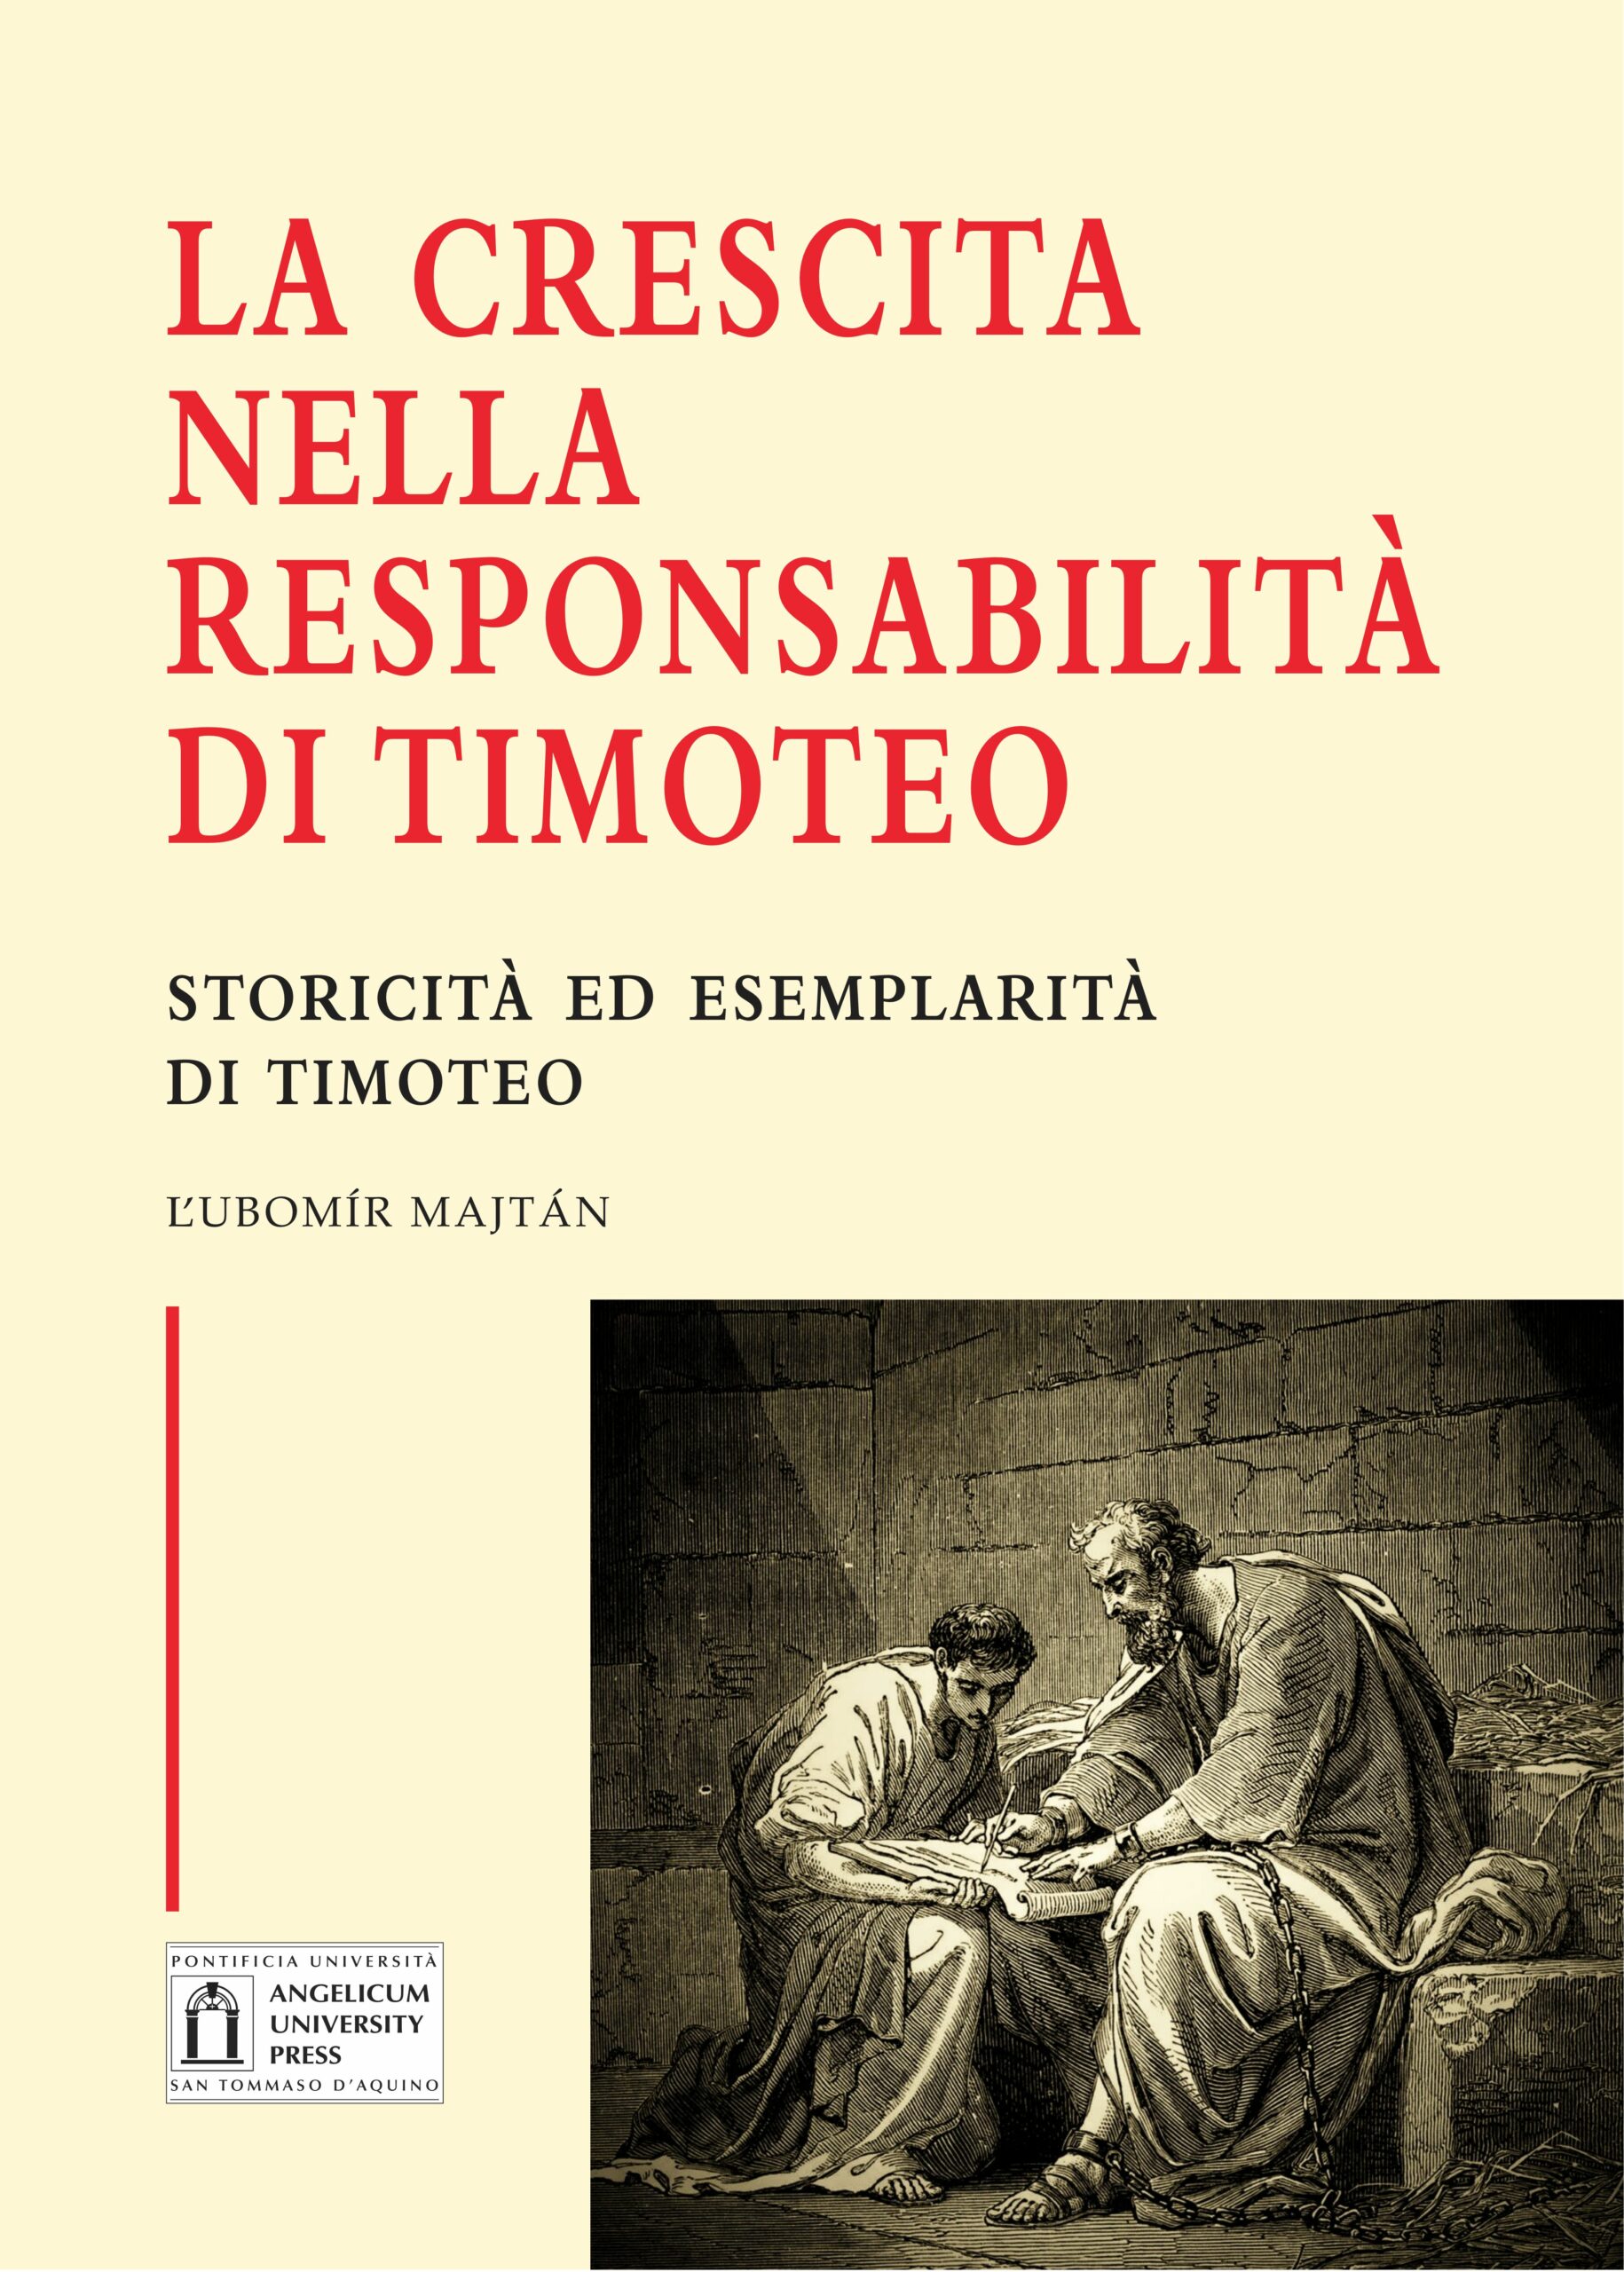 La crescita nella responsabilità di Timoteo book cover